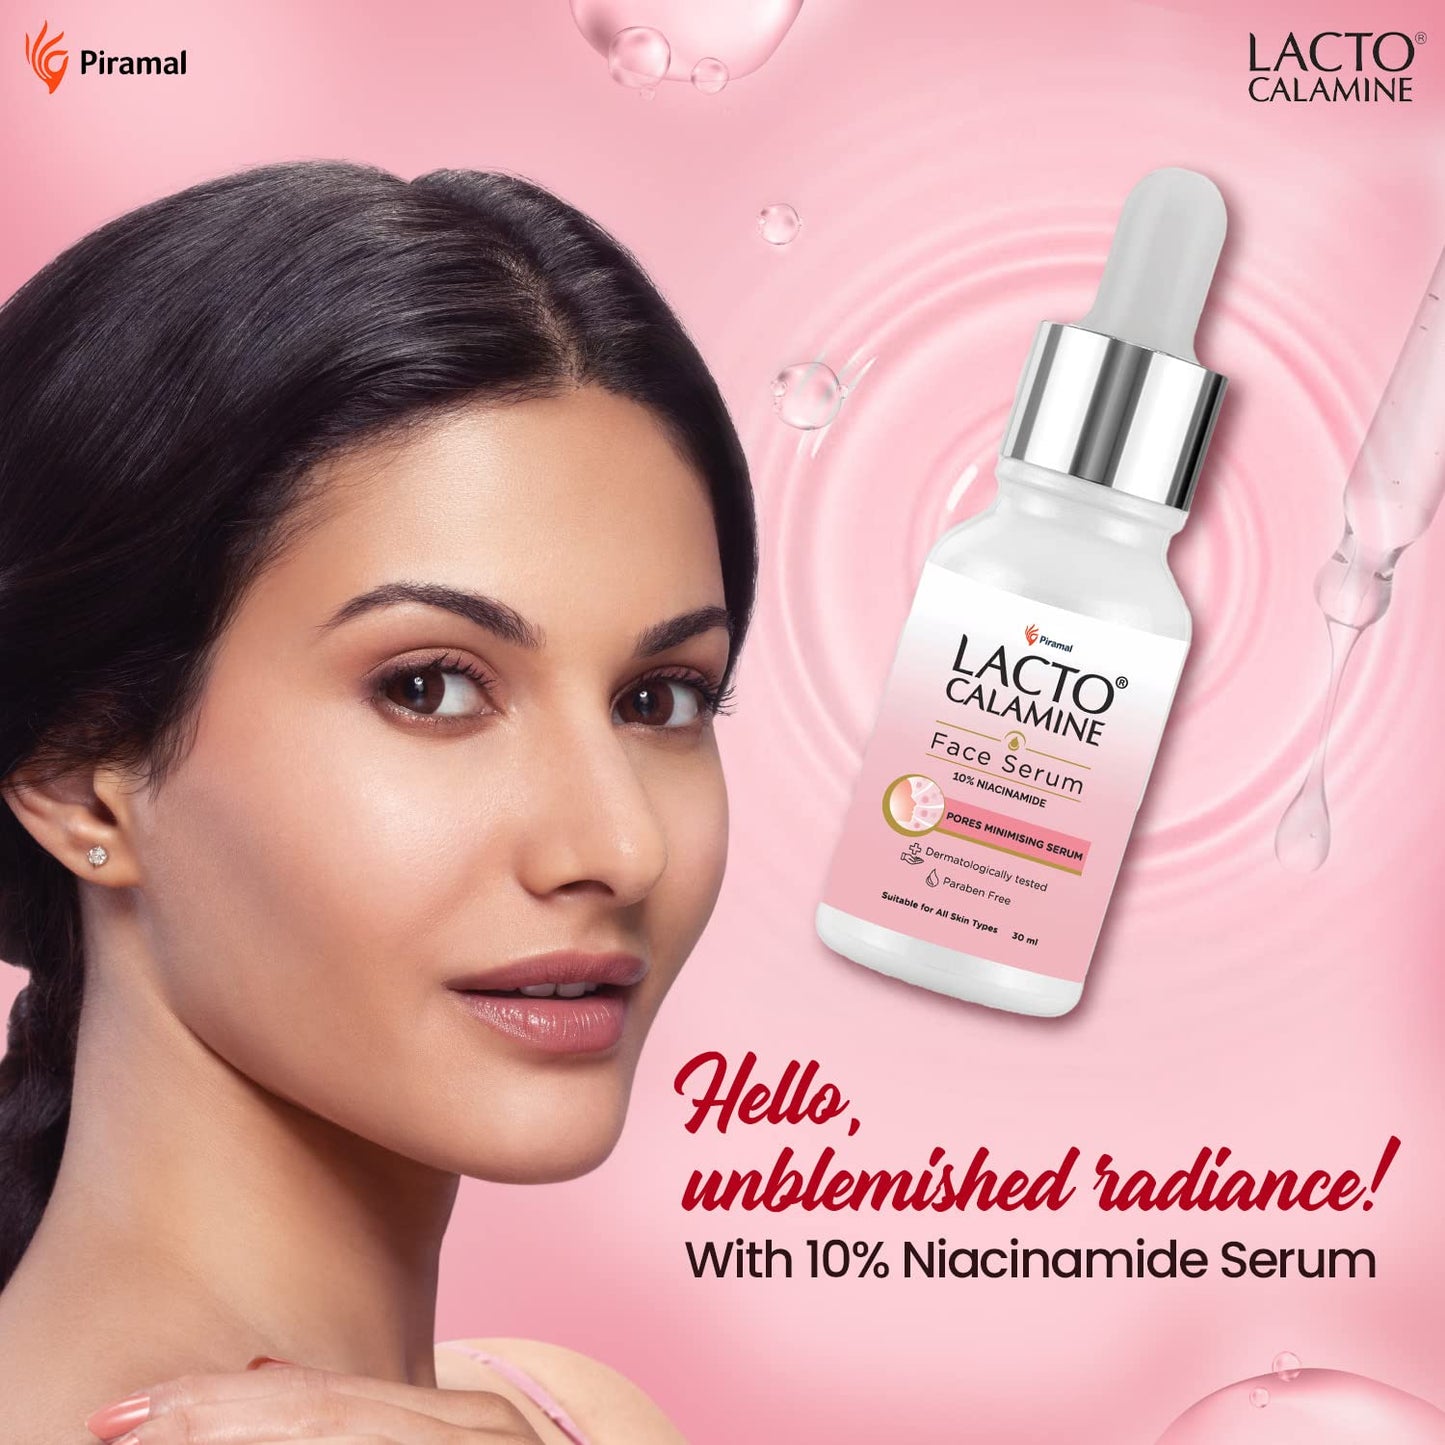 Lacto Calamine 10% Niacinamide face serum for minimising pores